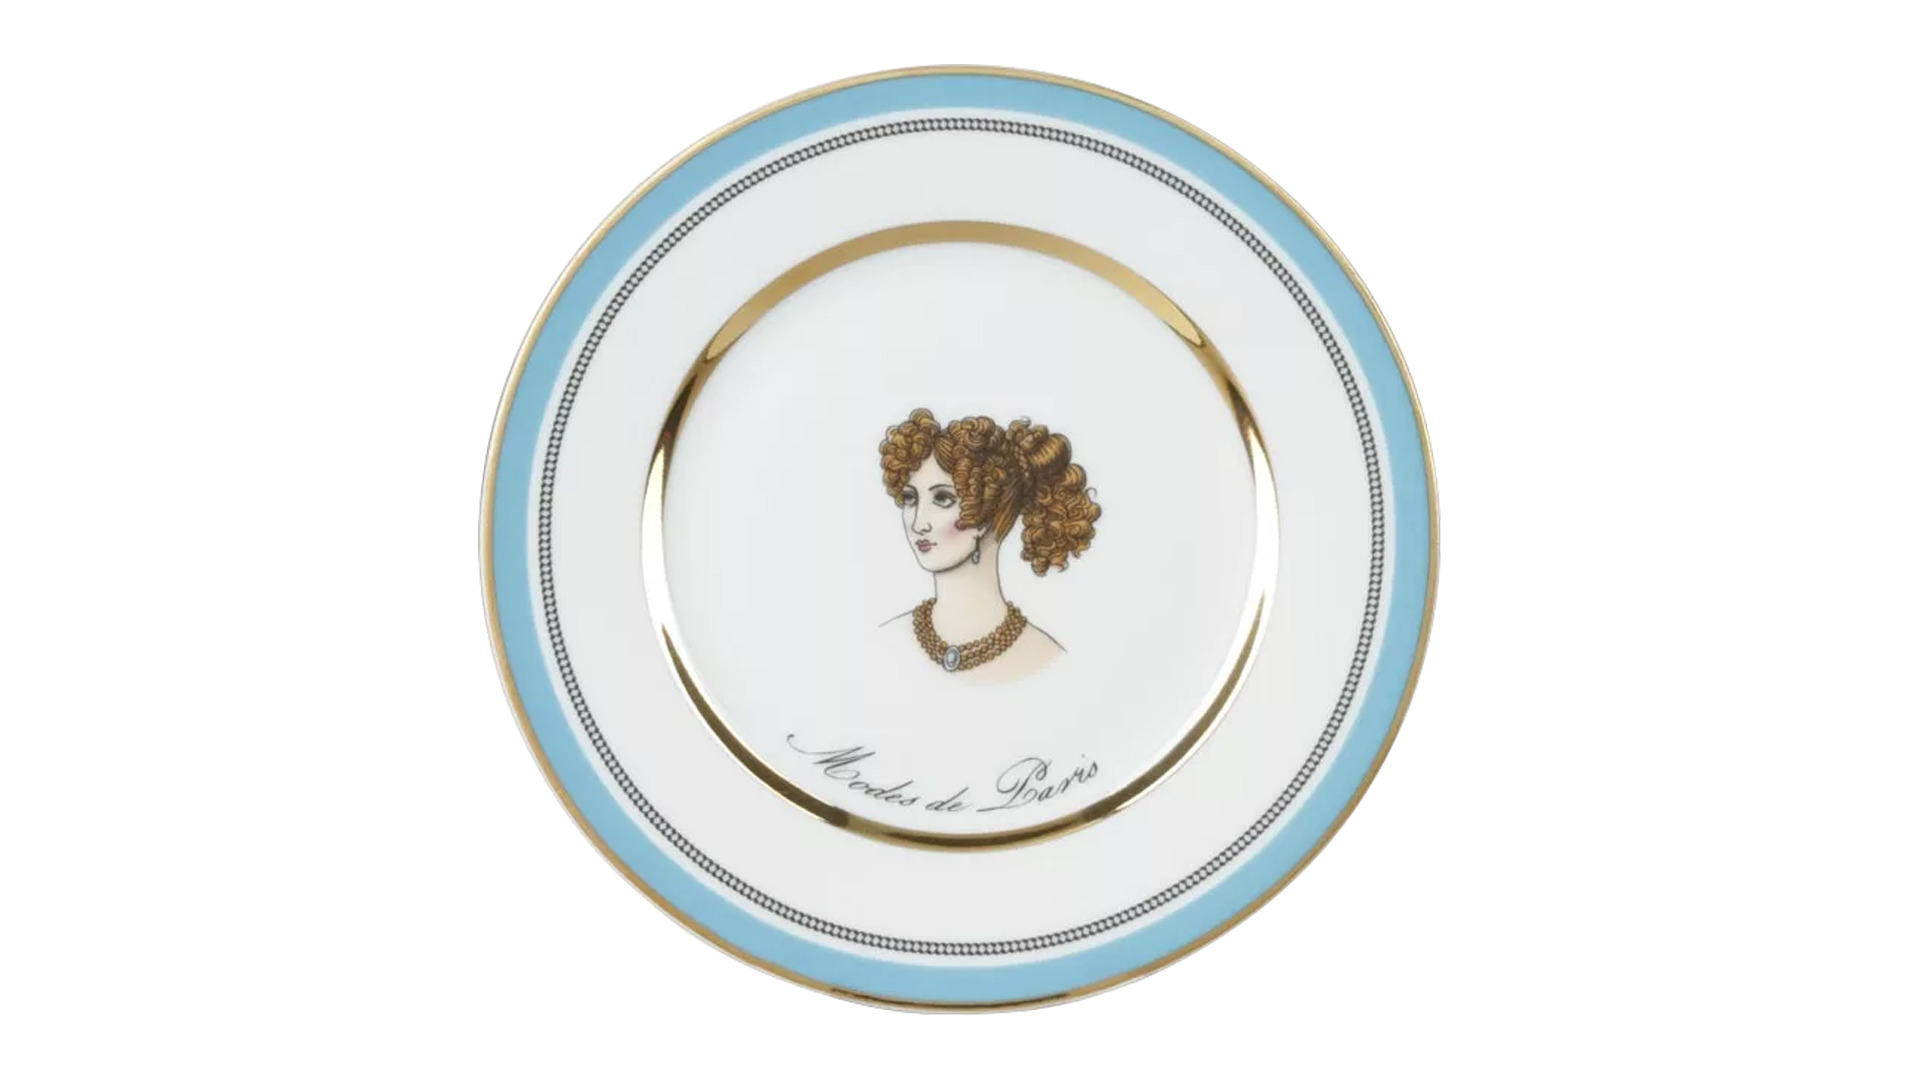 Тарелка десертная ИФЗ Modes de Paris Европейская-2,18 см, фарфор твердый, голубой, п/к